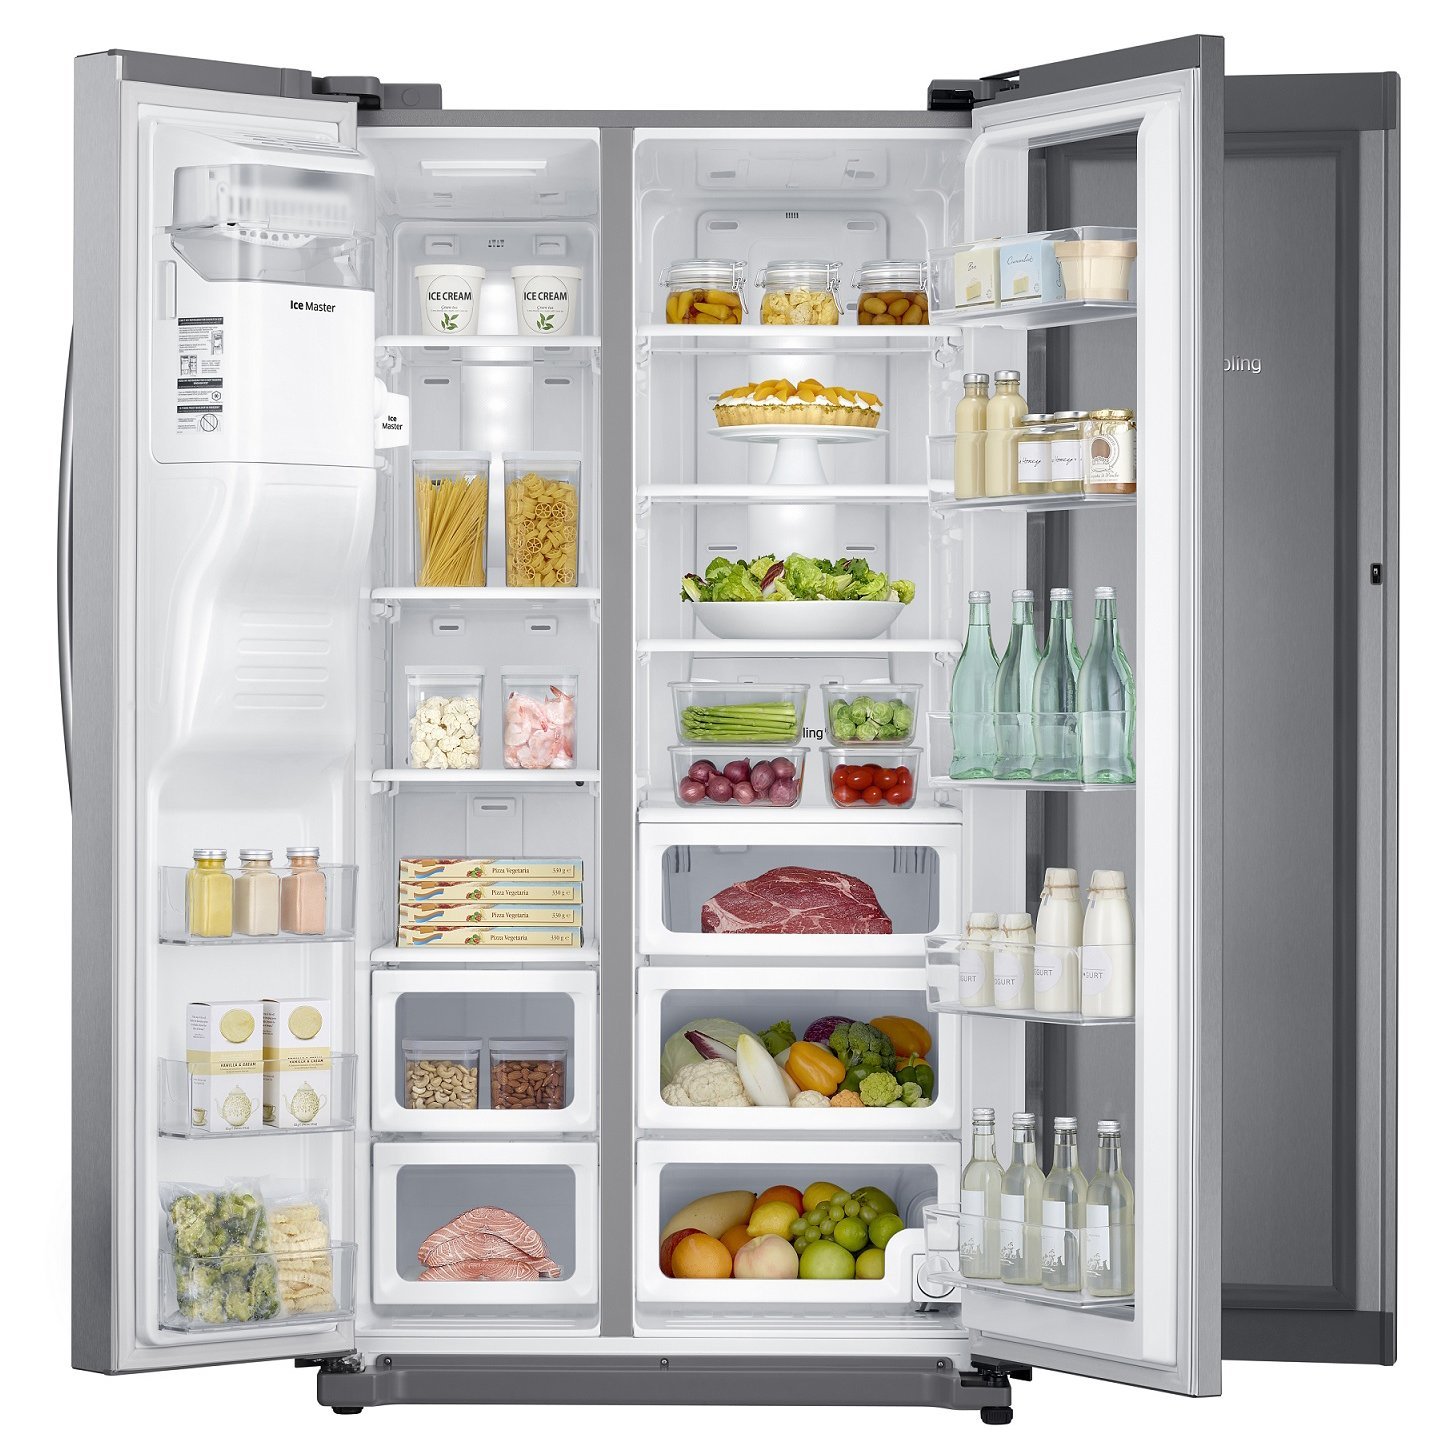 Самые надежные и качественные холодильники. Холодильник (Side-by-Side) Novex nssn117892x. Холодильник (Side-by-Side) Hi hssn117892w. Холодильник (Side-by-Side) Novex nssn017832s. Холодильник (Side-by-Side) Novex nssn117893w.